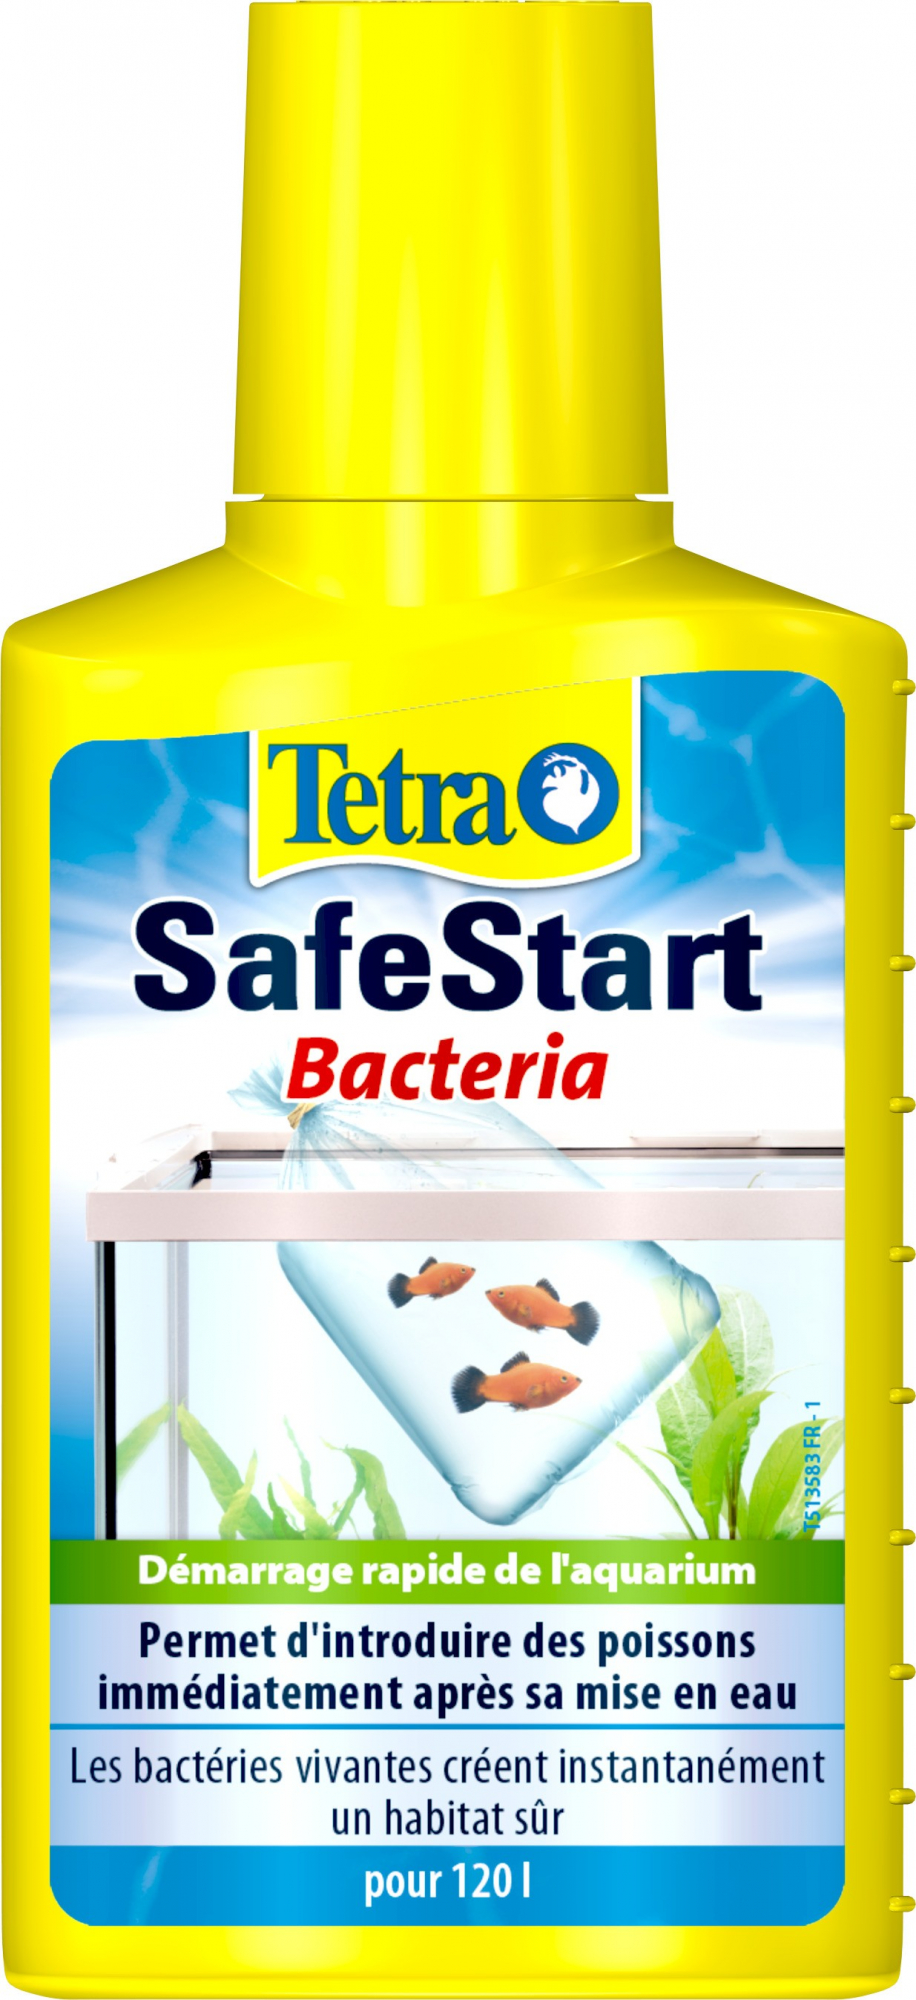 Tetra Safestart prodotto per l'avvio rapido dell'acquario